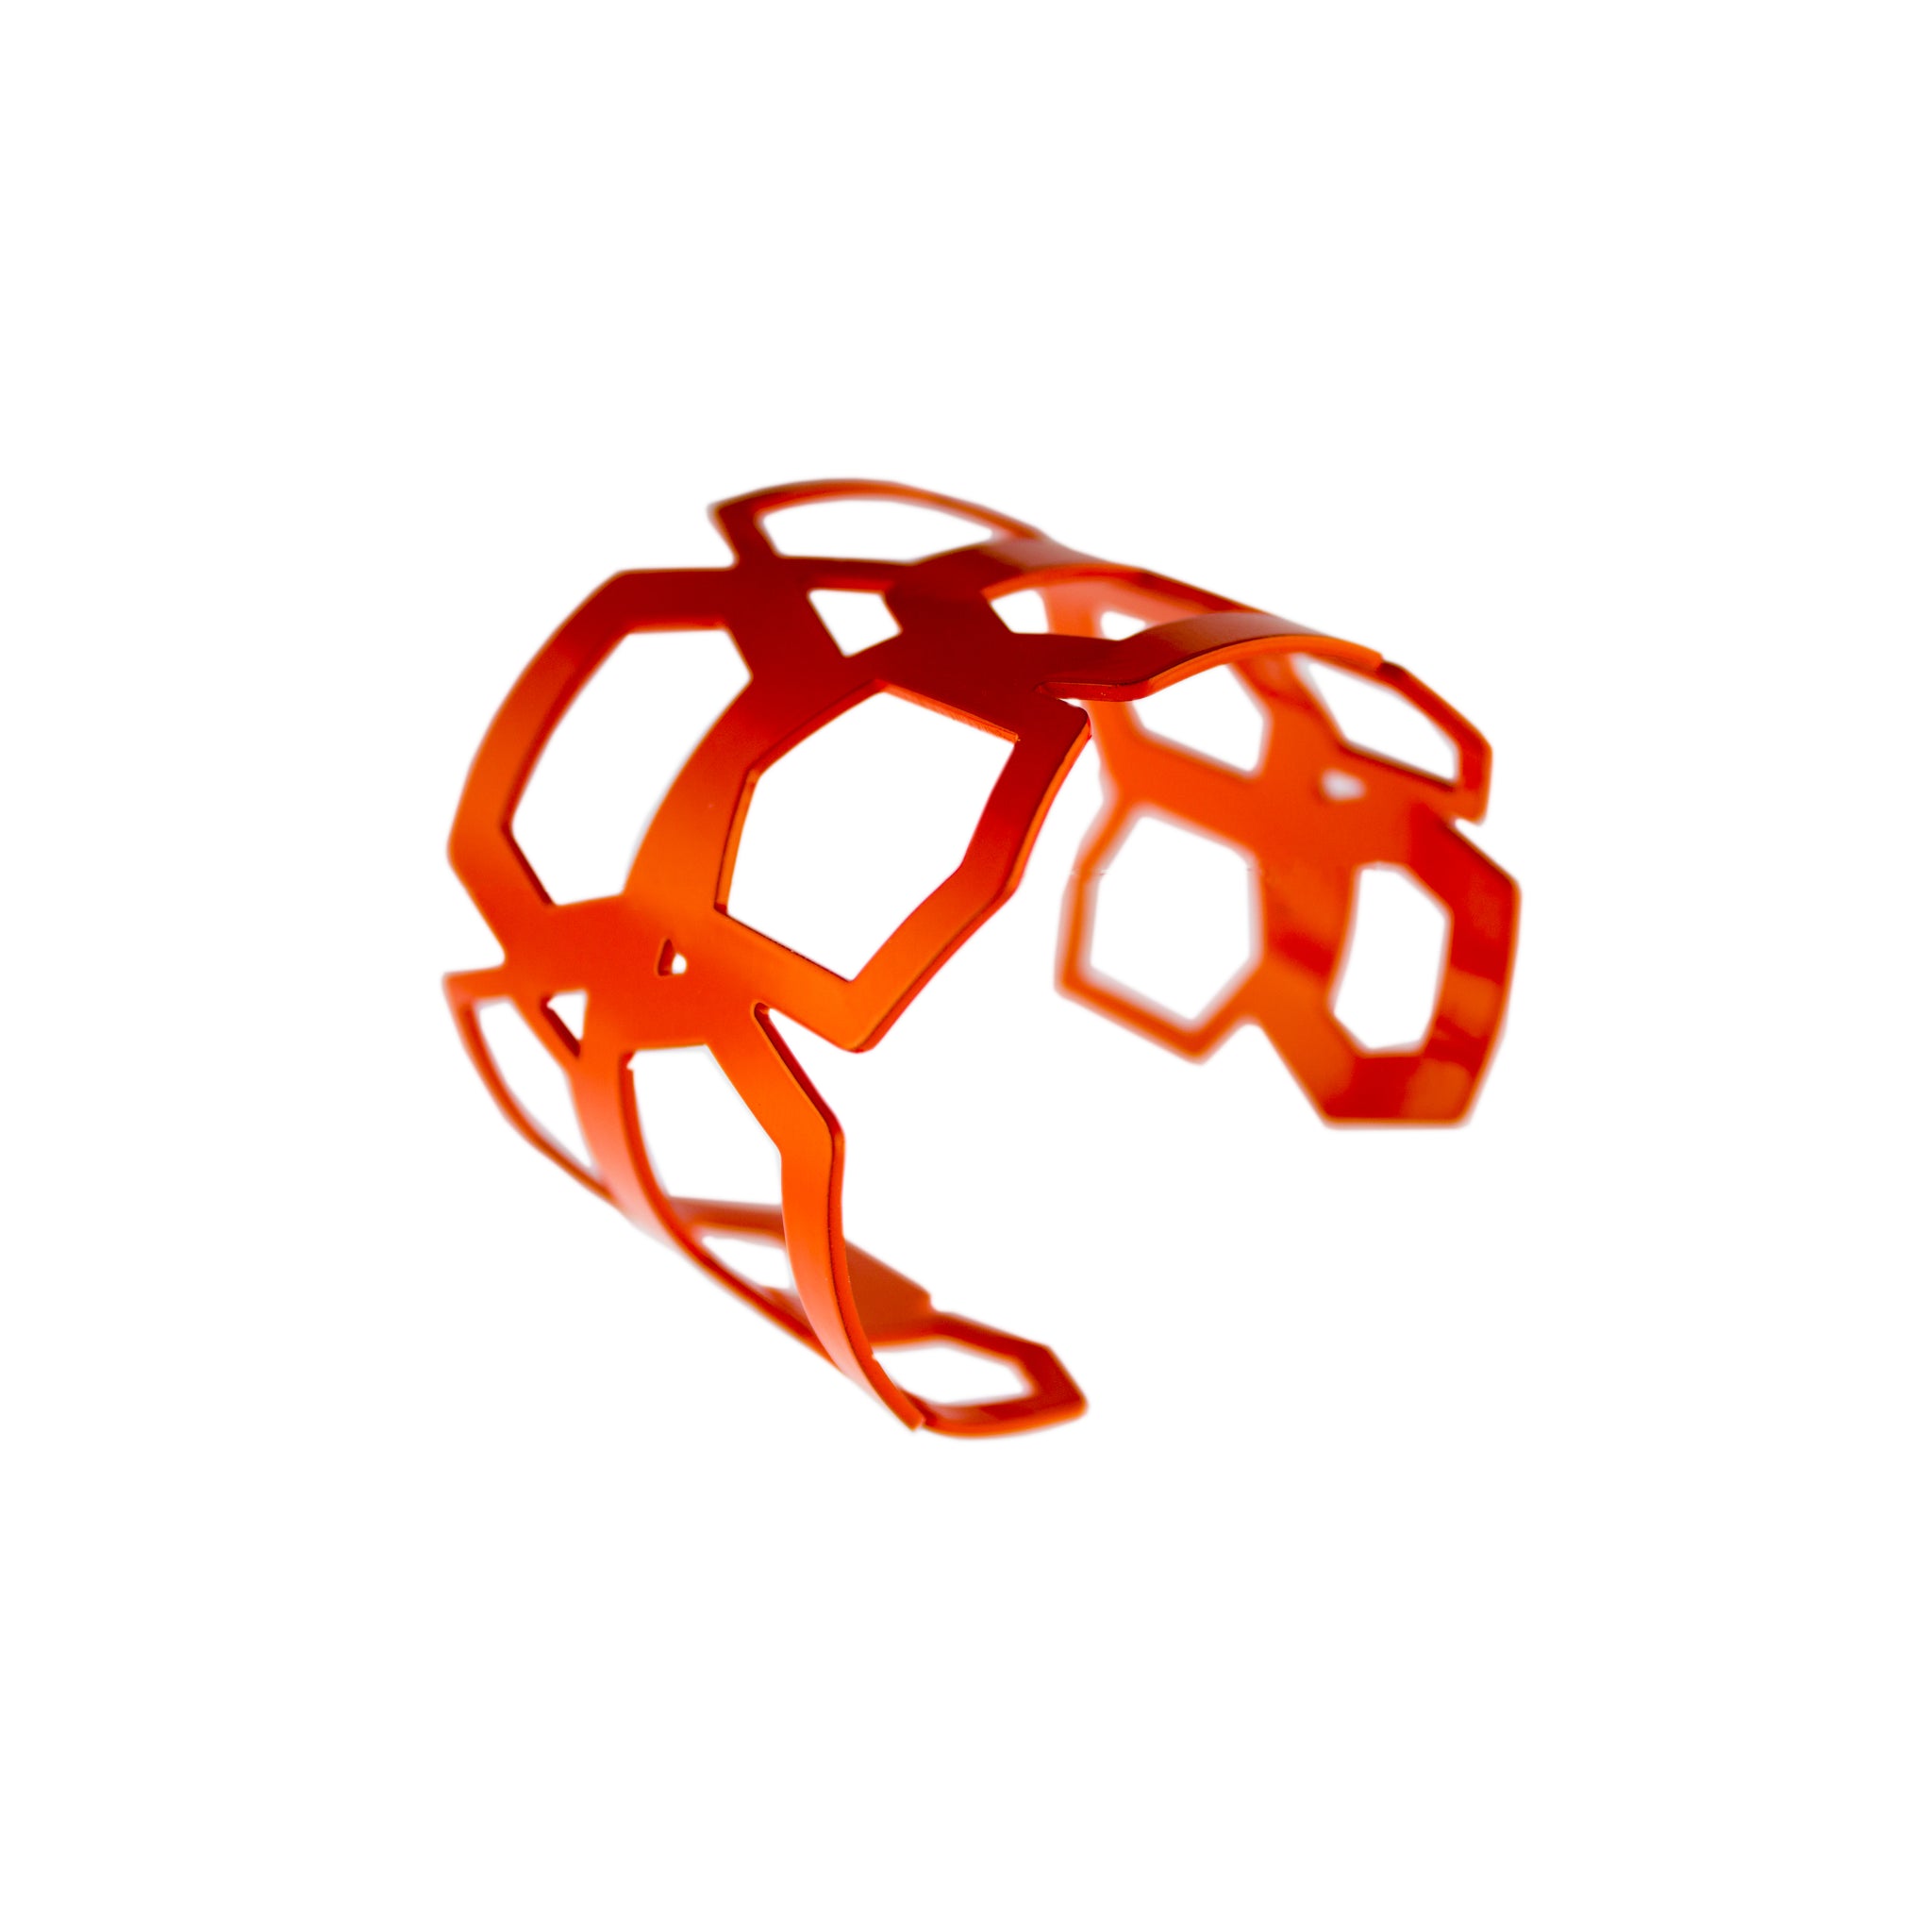 Vibrant_Orange - WITHIN x COMMON GROUND Jewelry Perspective View